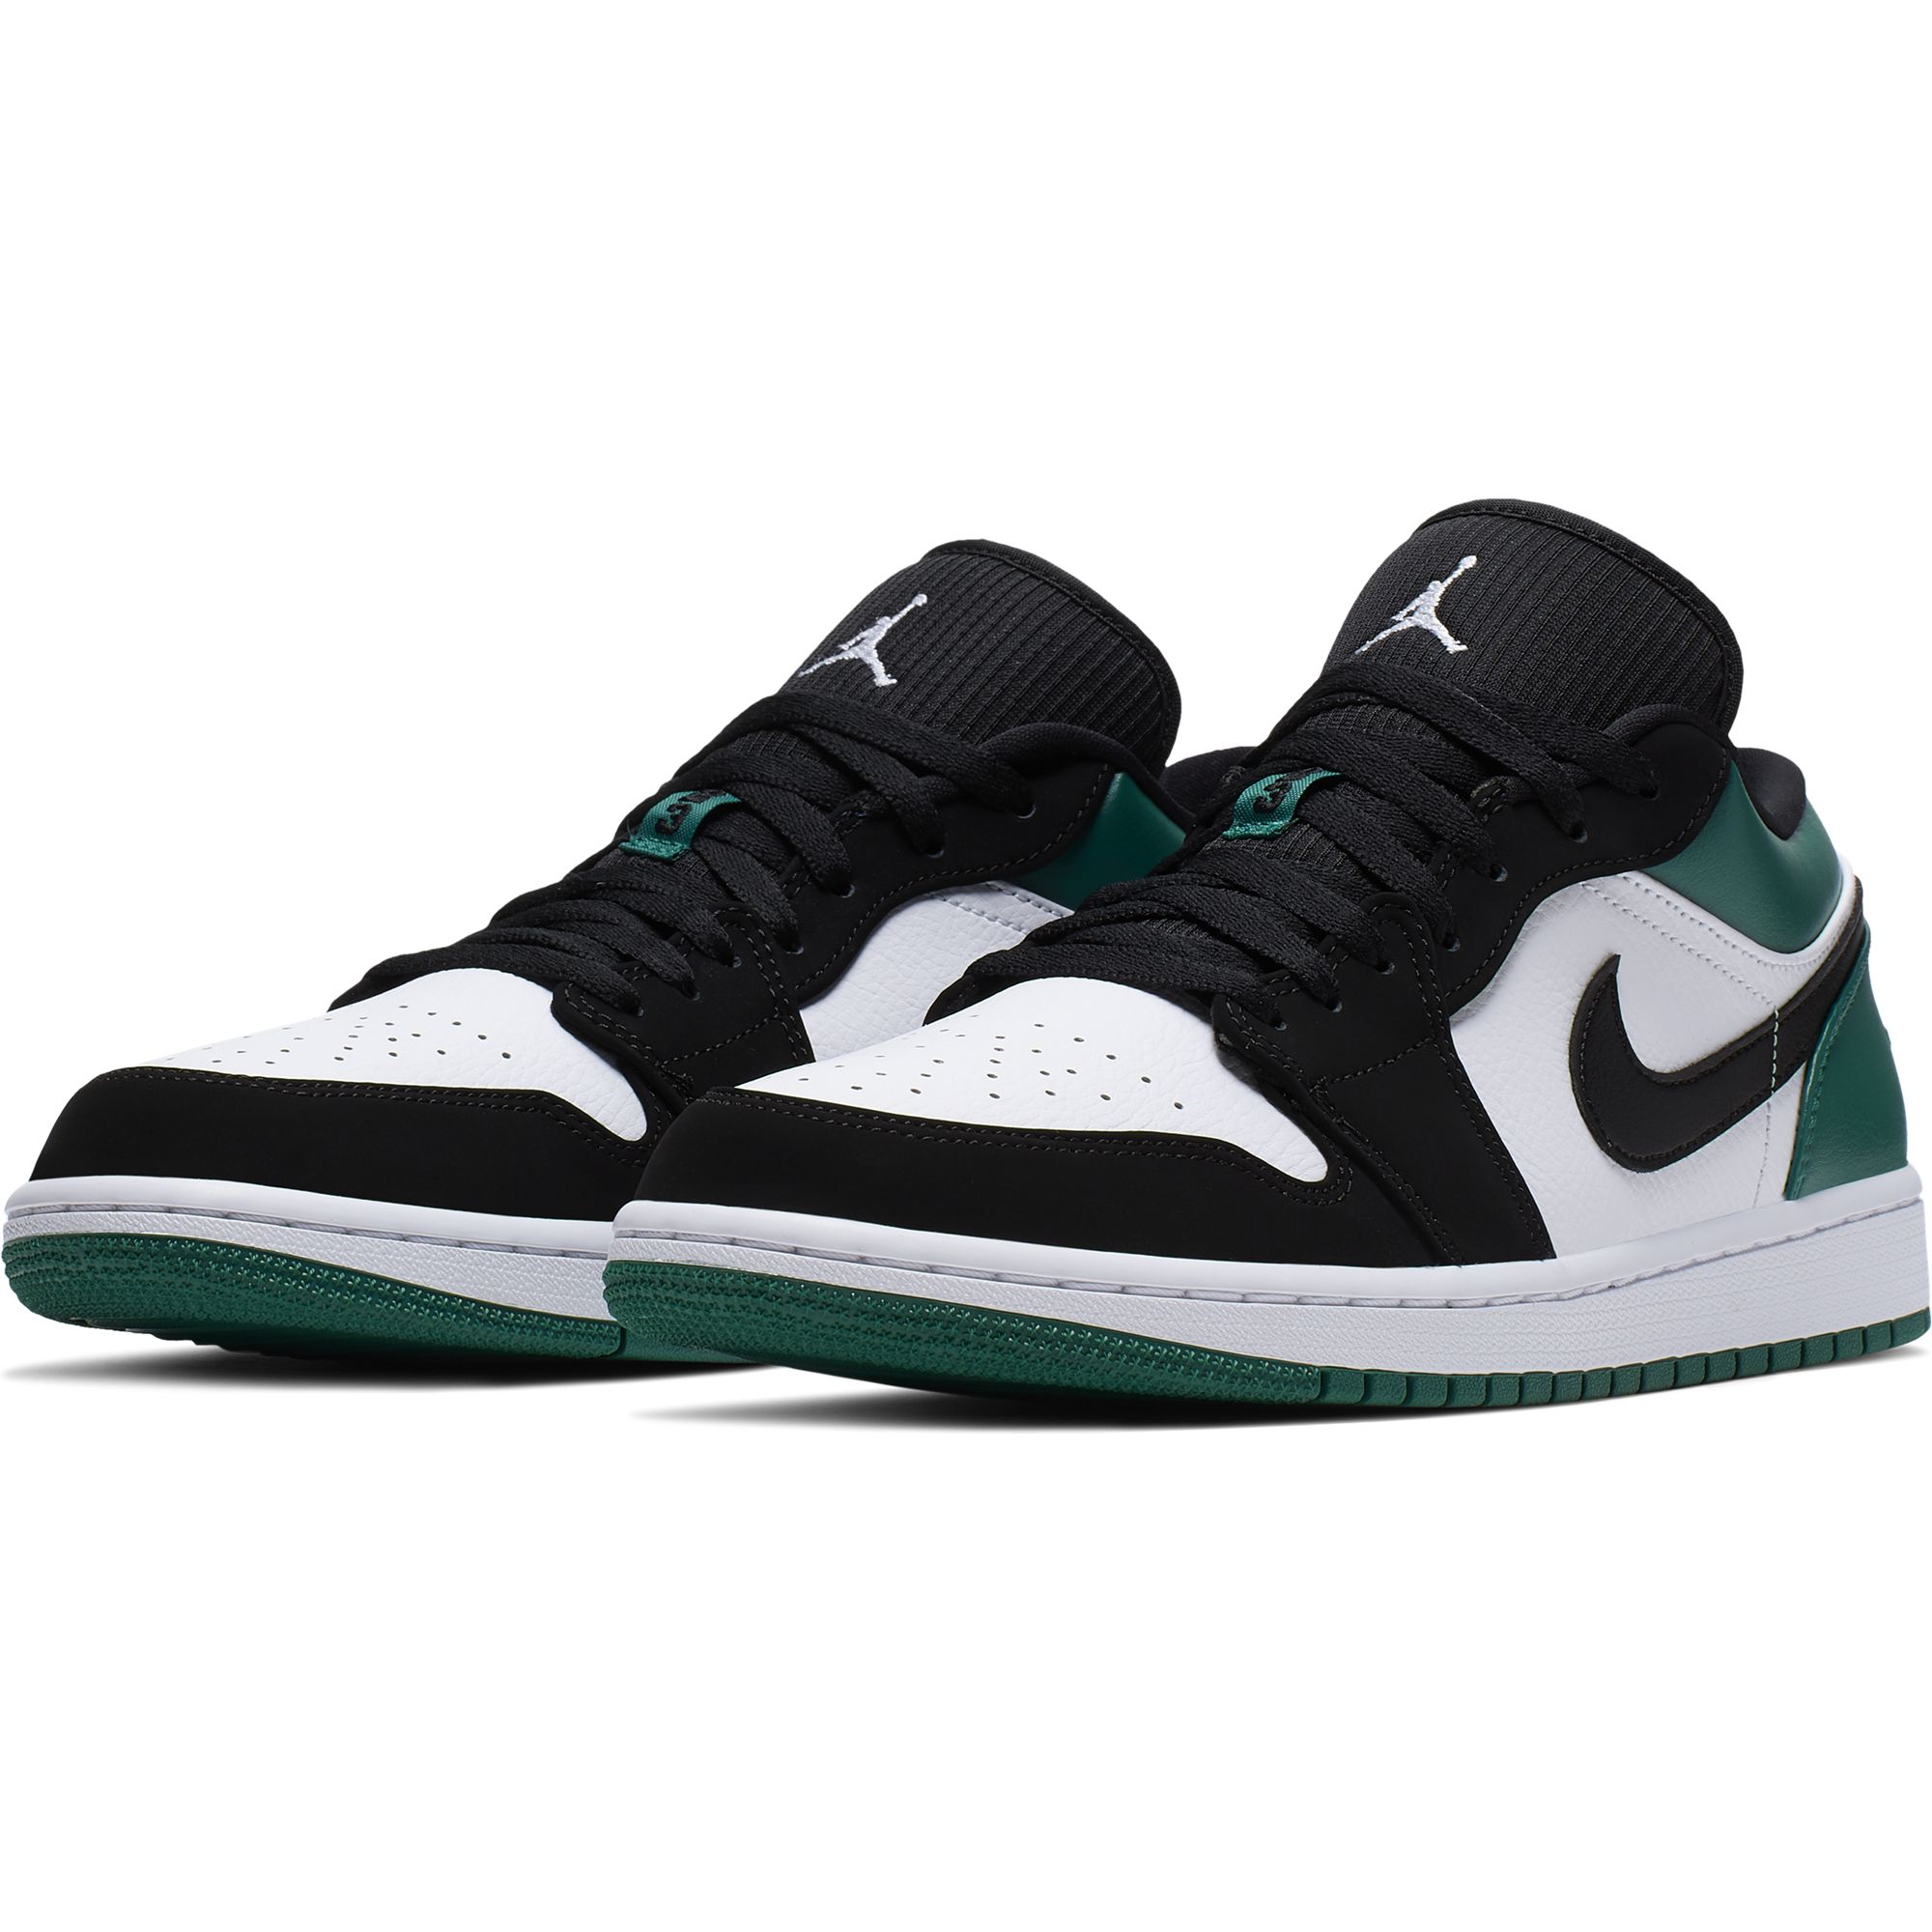 Найк 1 лоу. Nike Air Jordan 1 Low зеленые. Nike Air Jordan 1 Low Pine Green. Nike Air Jordan 1 Low Green. Nike Jordan 1 Low.